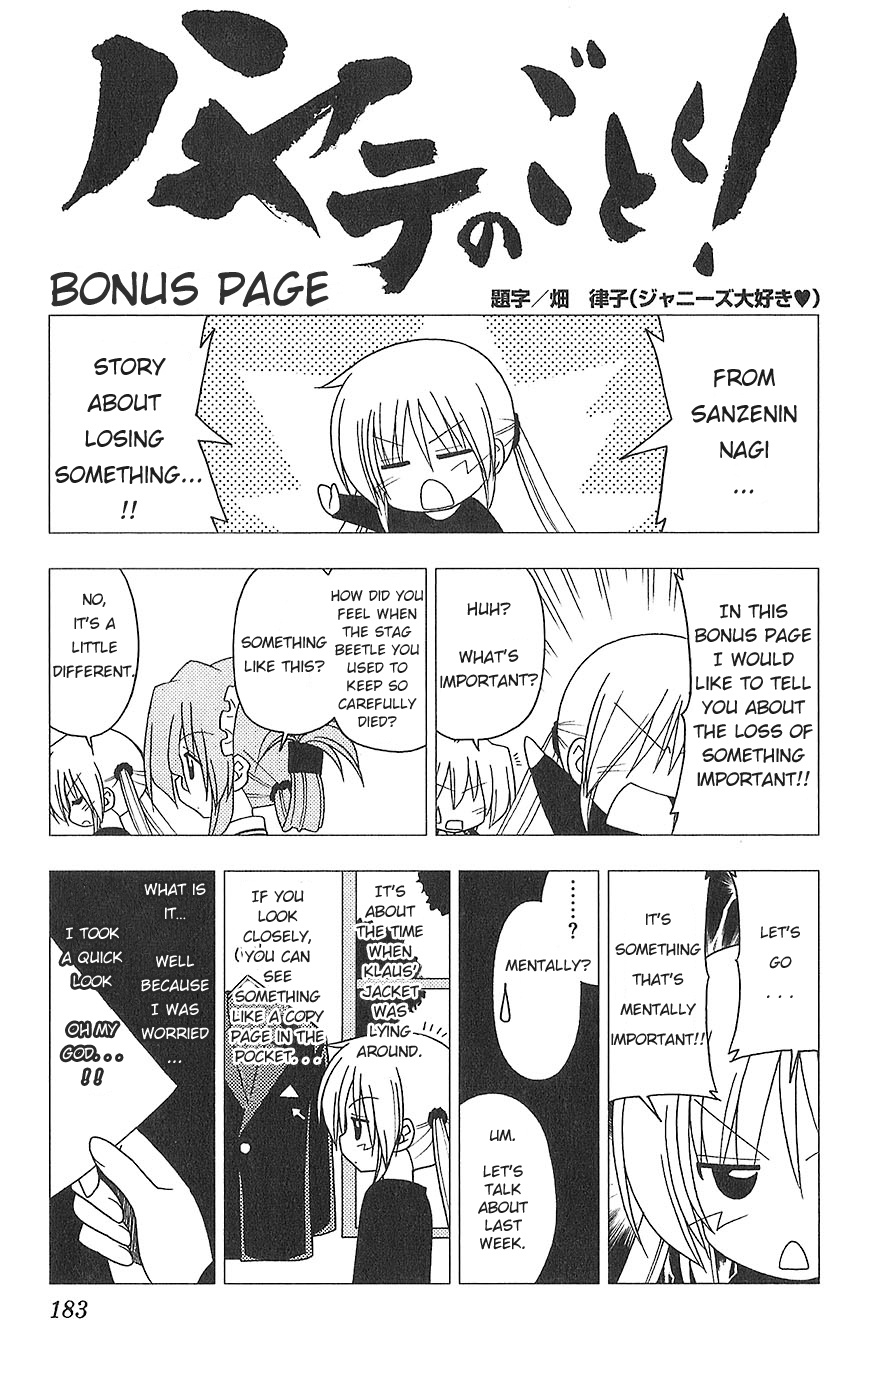 Hayate No Gotoku! - Page 1